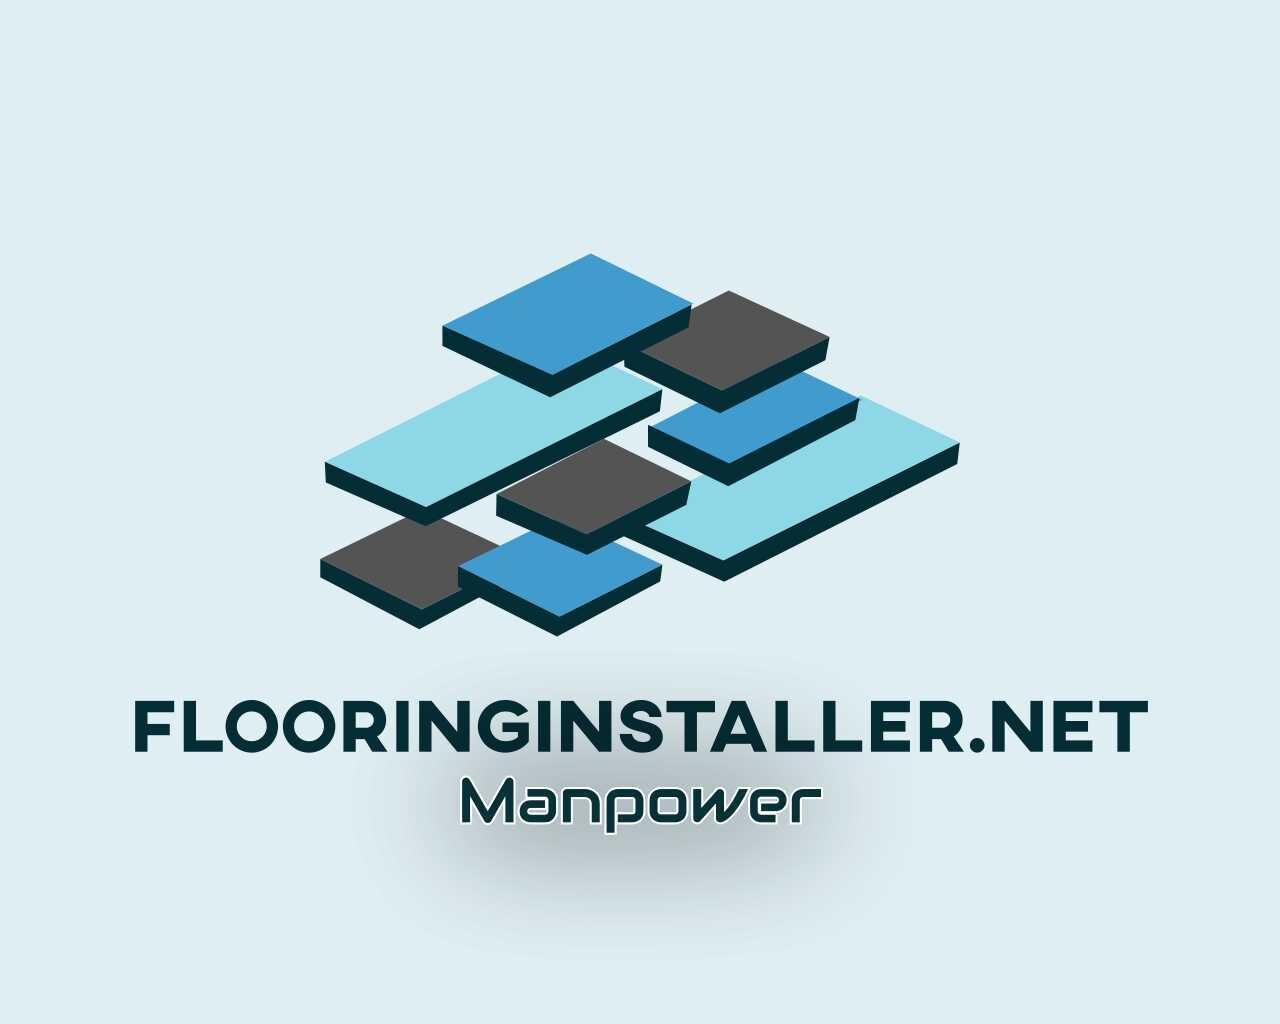 FlooringInstaller.net